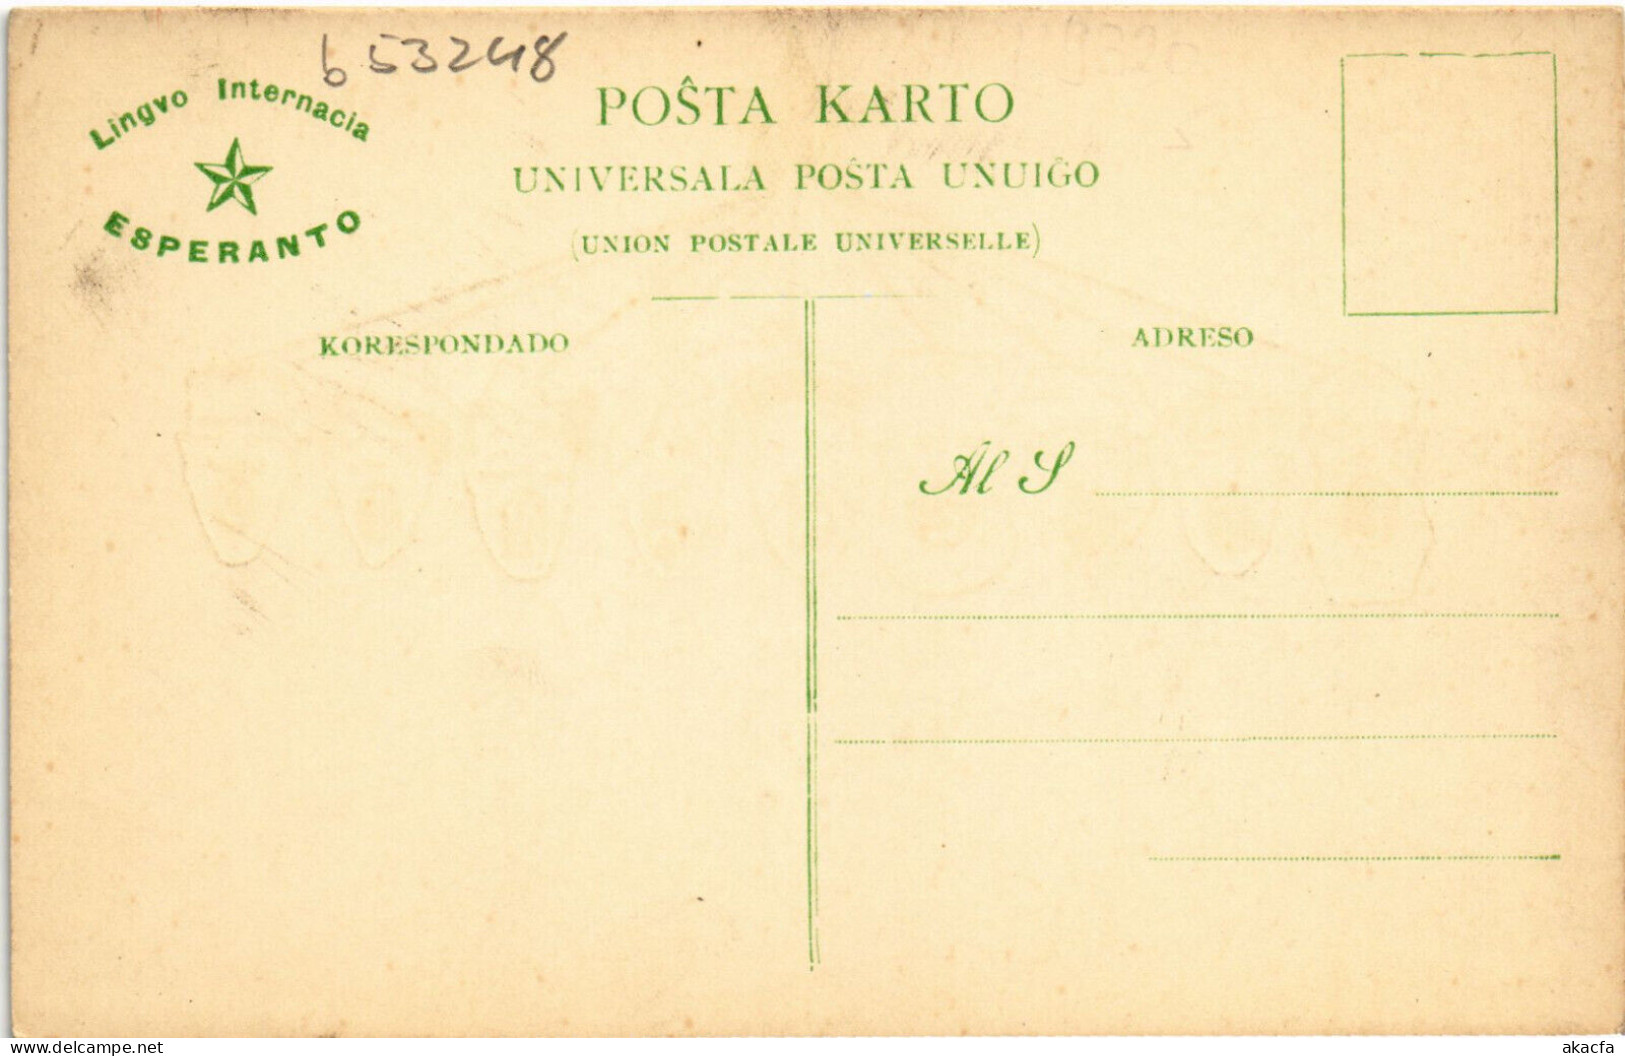 PC ESPERANTO, LINGVO INTERNACIA, Vintage Postcard (b53248) - Esperanto